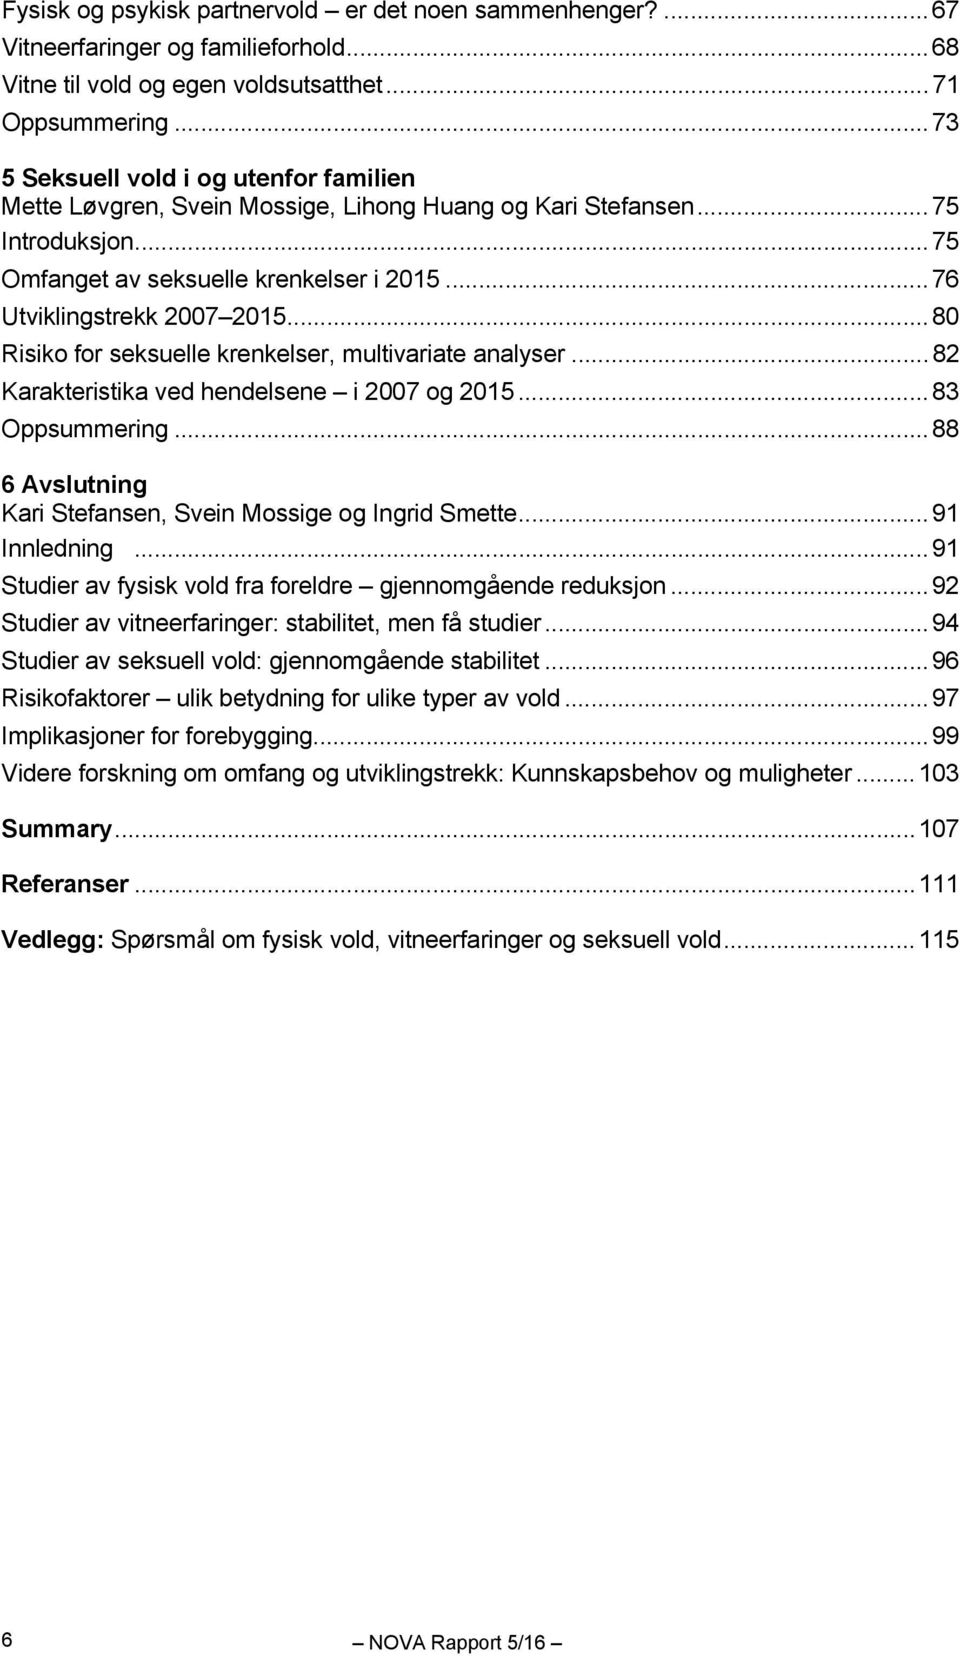 .. 80 Risiko for seksuelle krenkelser, multivariate analyser... 82 Karakteristika ved hendelsene i 2007 og 2015... 83 Oppsummering... 88 6 Avslutning Kari Stefansen, Svein Mossige og Ingrid Smette.